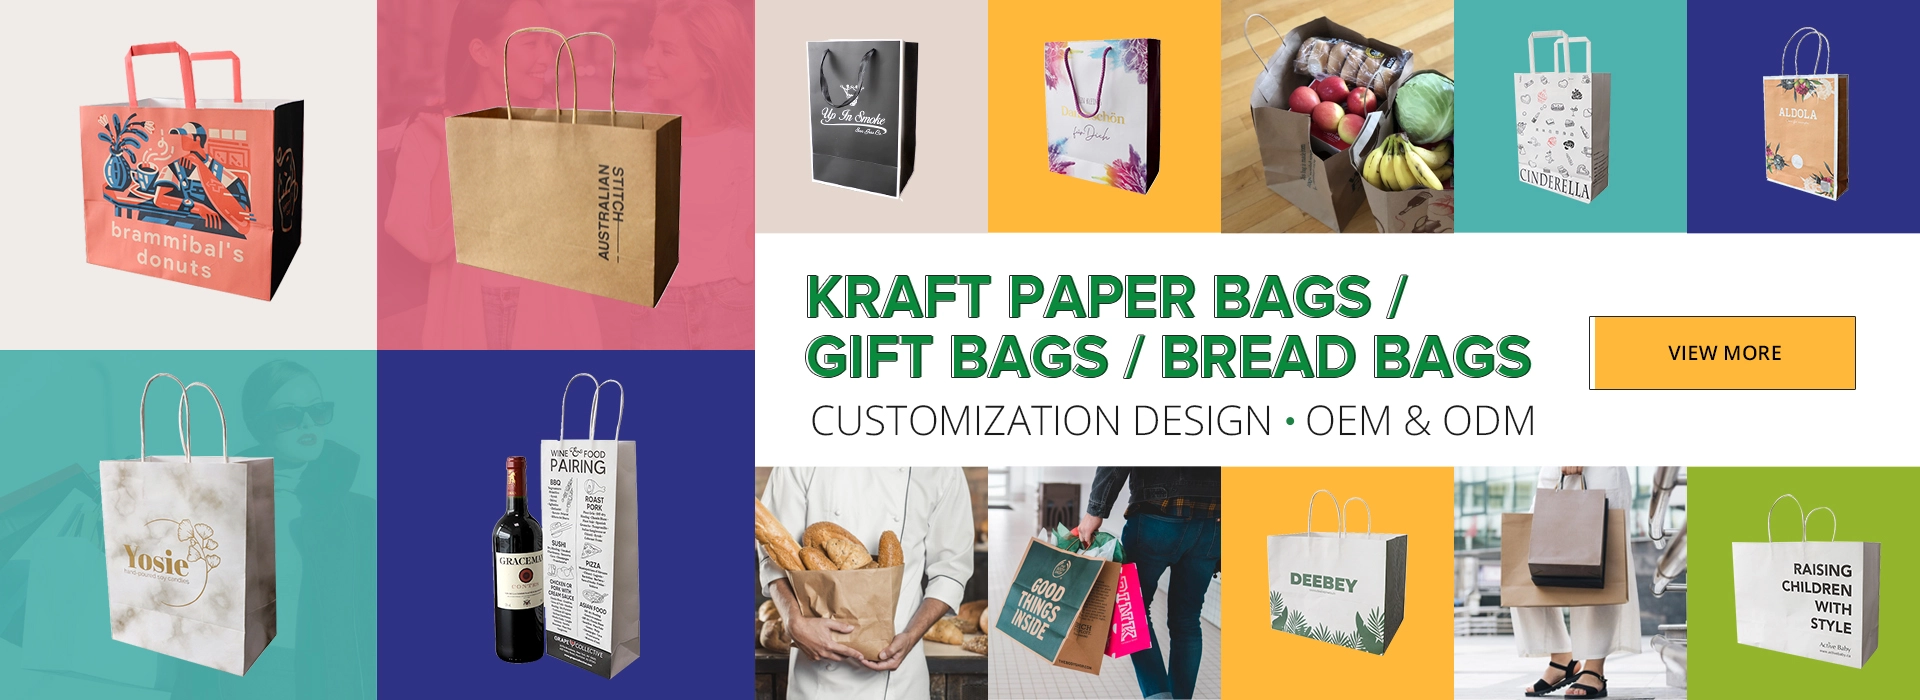 Kraft papre bag Gift bags Bread bags